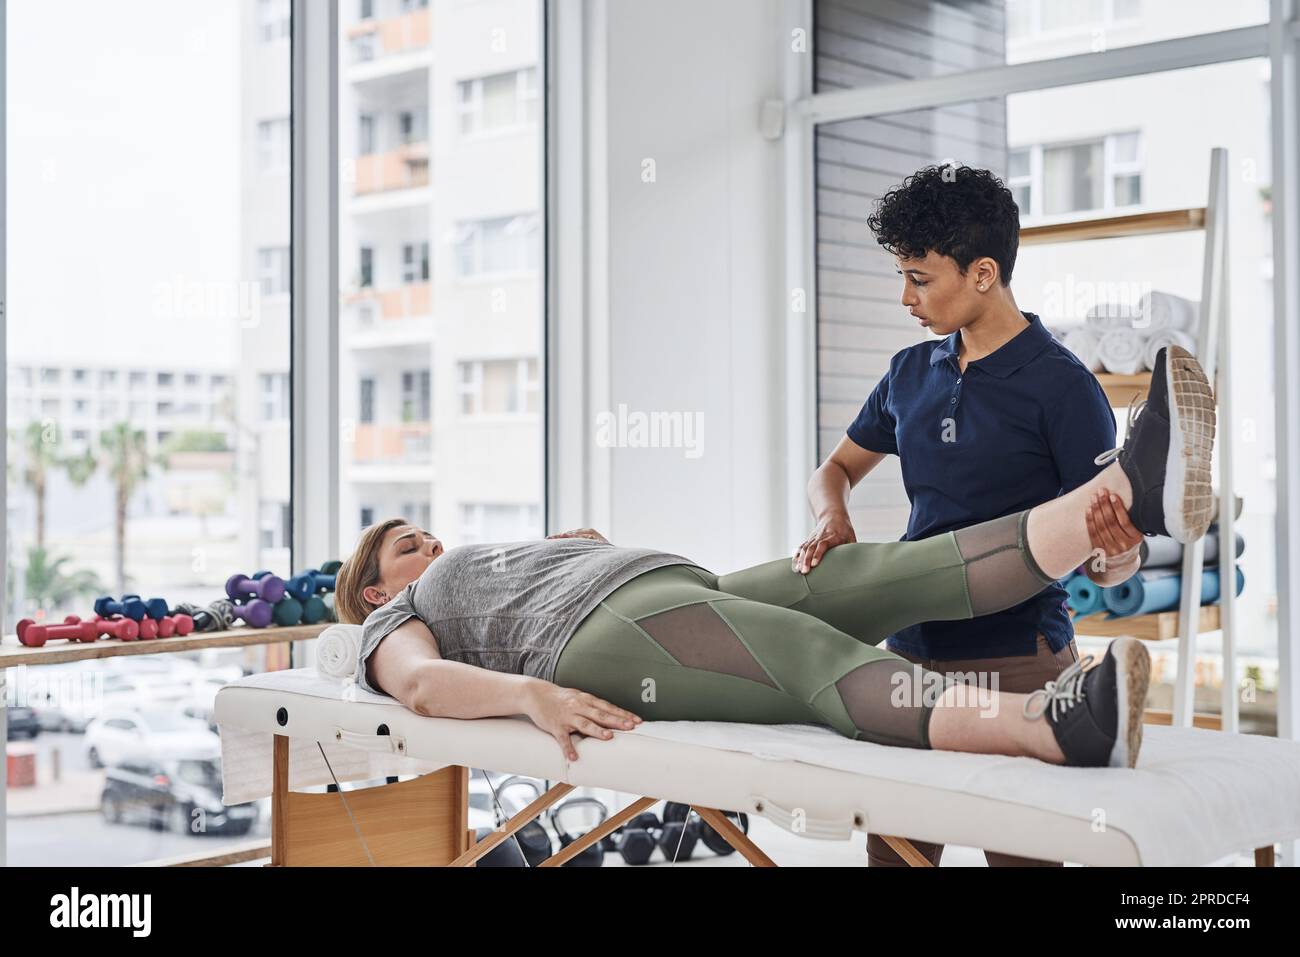 Eine junge Physiotherapeutin macht mit ihrer Patientin in ihrem Büro in einer Klinik Beinübungen. Stockfoto